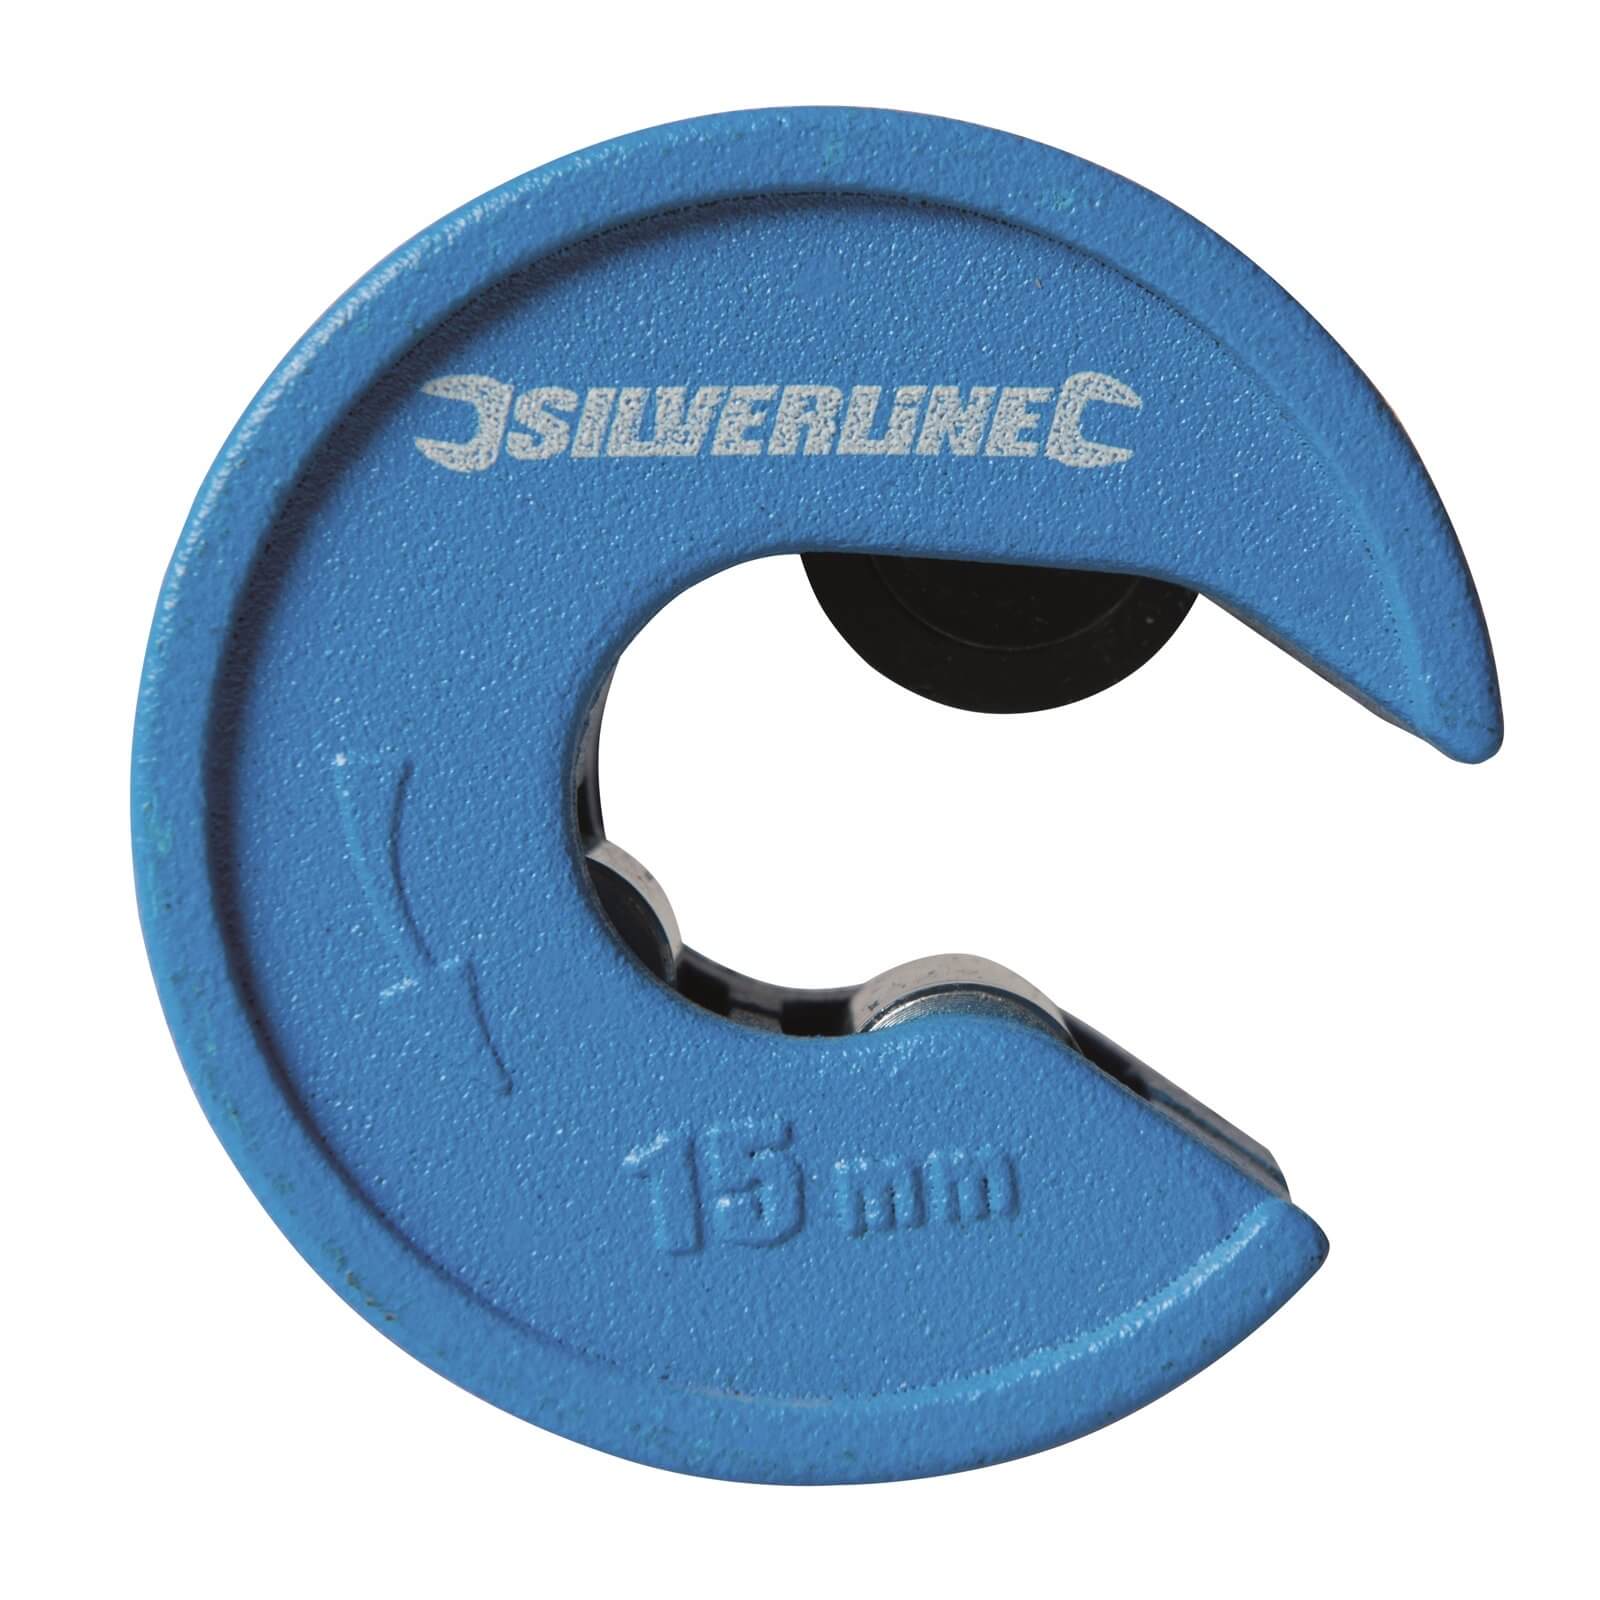 Silverline Quick Cut Pipe Cutter - 15mm